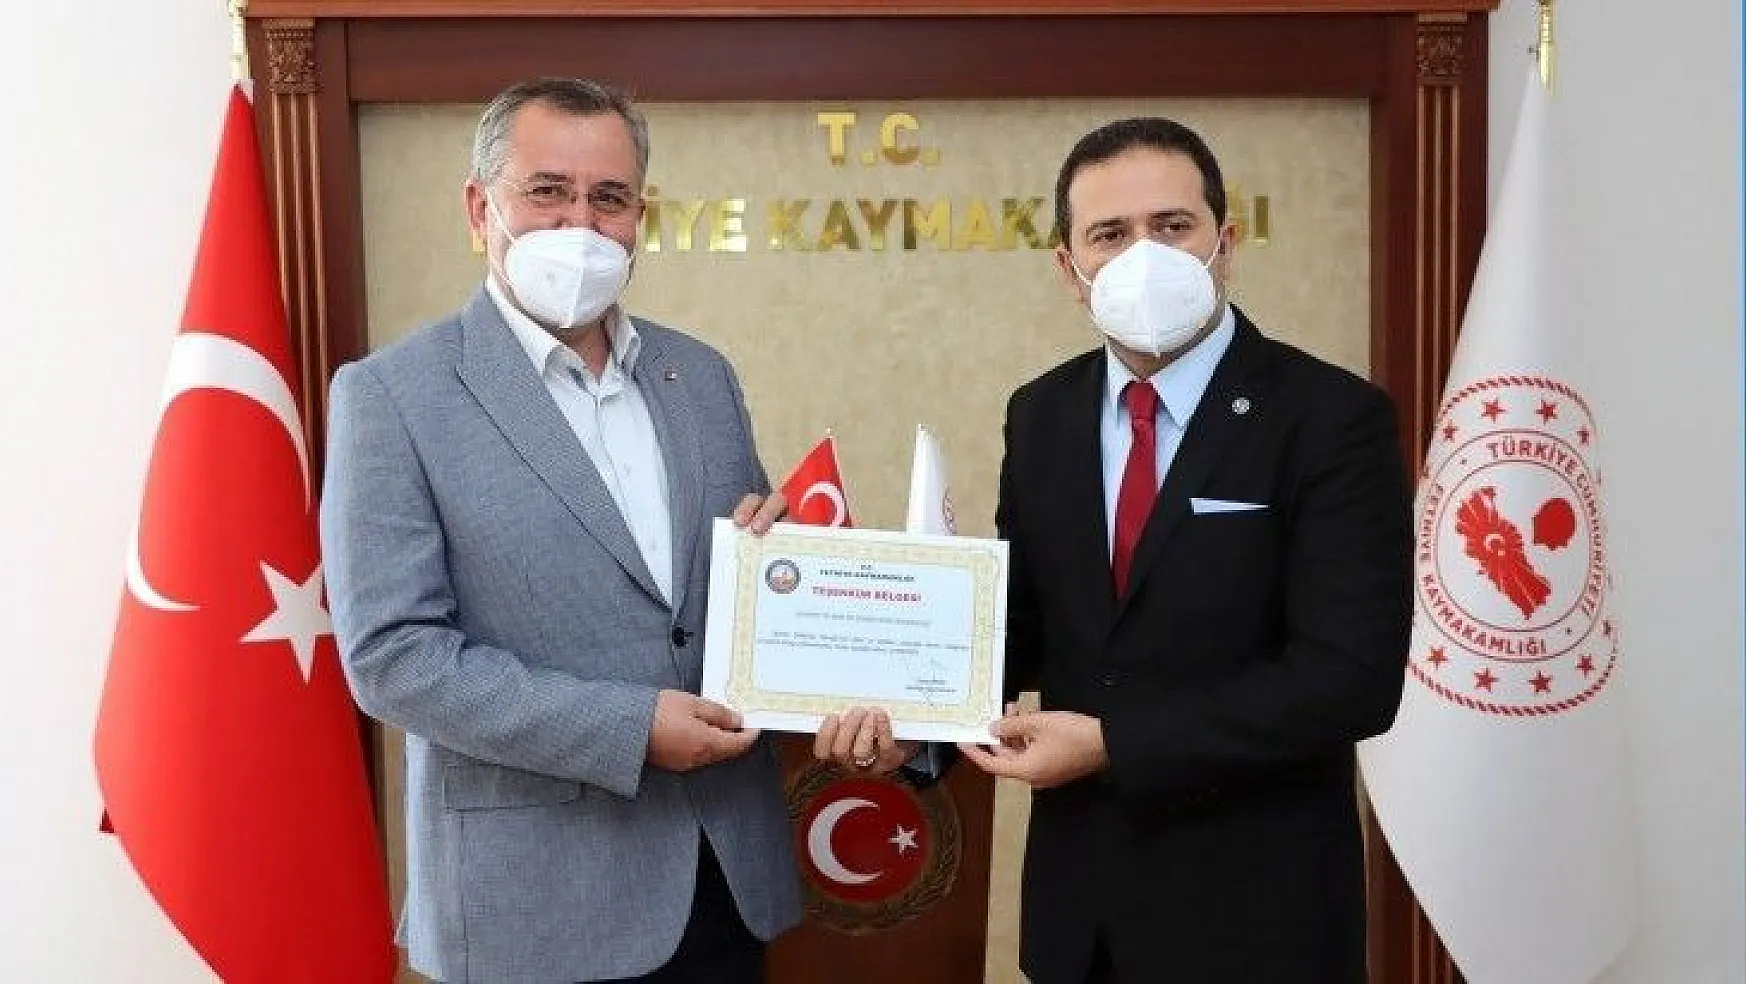 Fethiye Kaymakamı Fırat'tan Başkan Çıralı'ya teşekkür belgesi